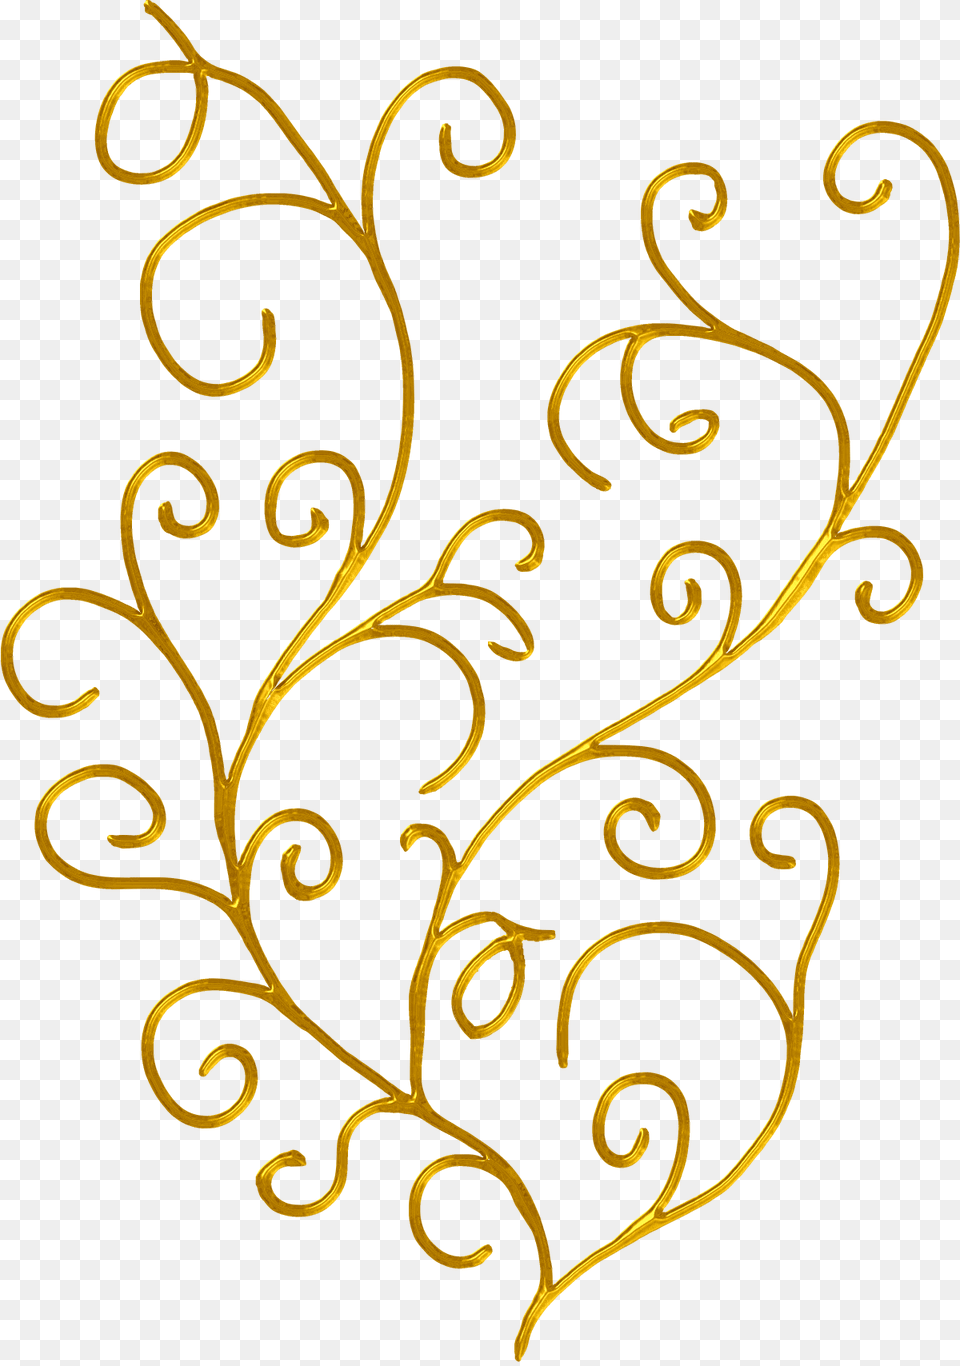 Line Leaf Clip Art Transprent Golden Leaf Line Art, Floral Design, Graphics, Pattern Free Png Download